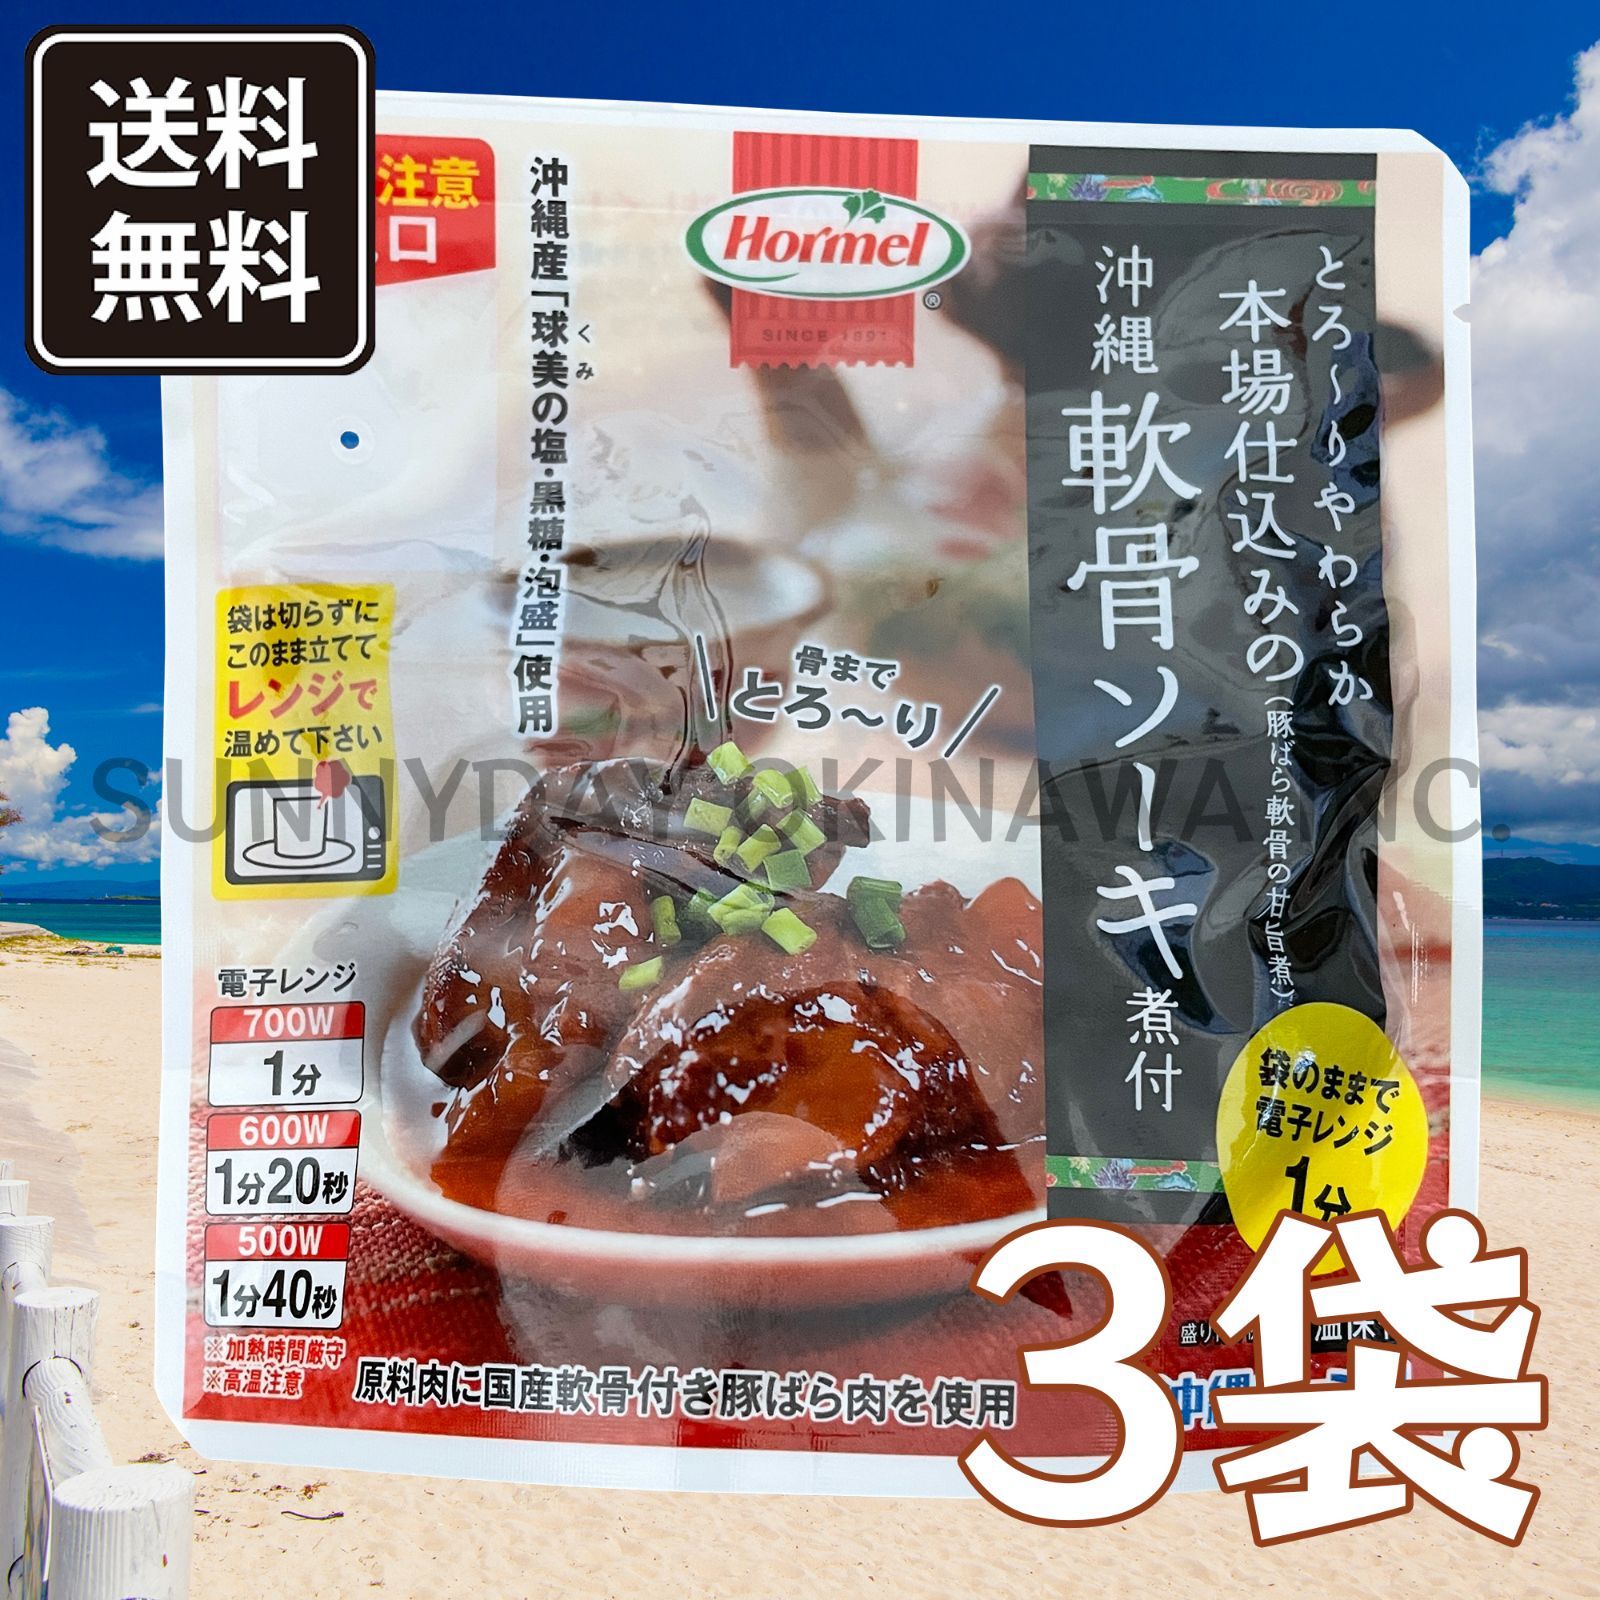 最も完璧な 軟骨ソーキの煮付 3袋 沖縄ホーメル ソーキ丼 ソーキそば